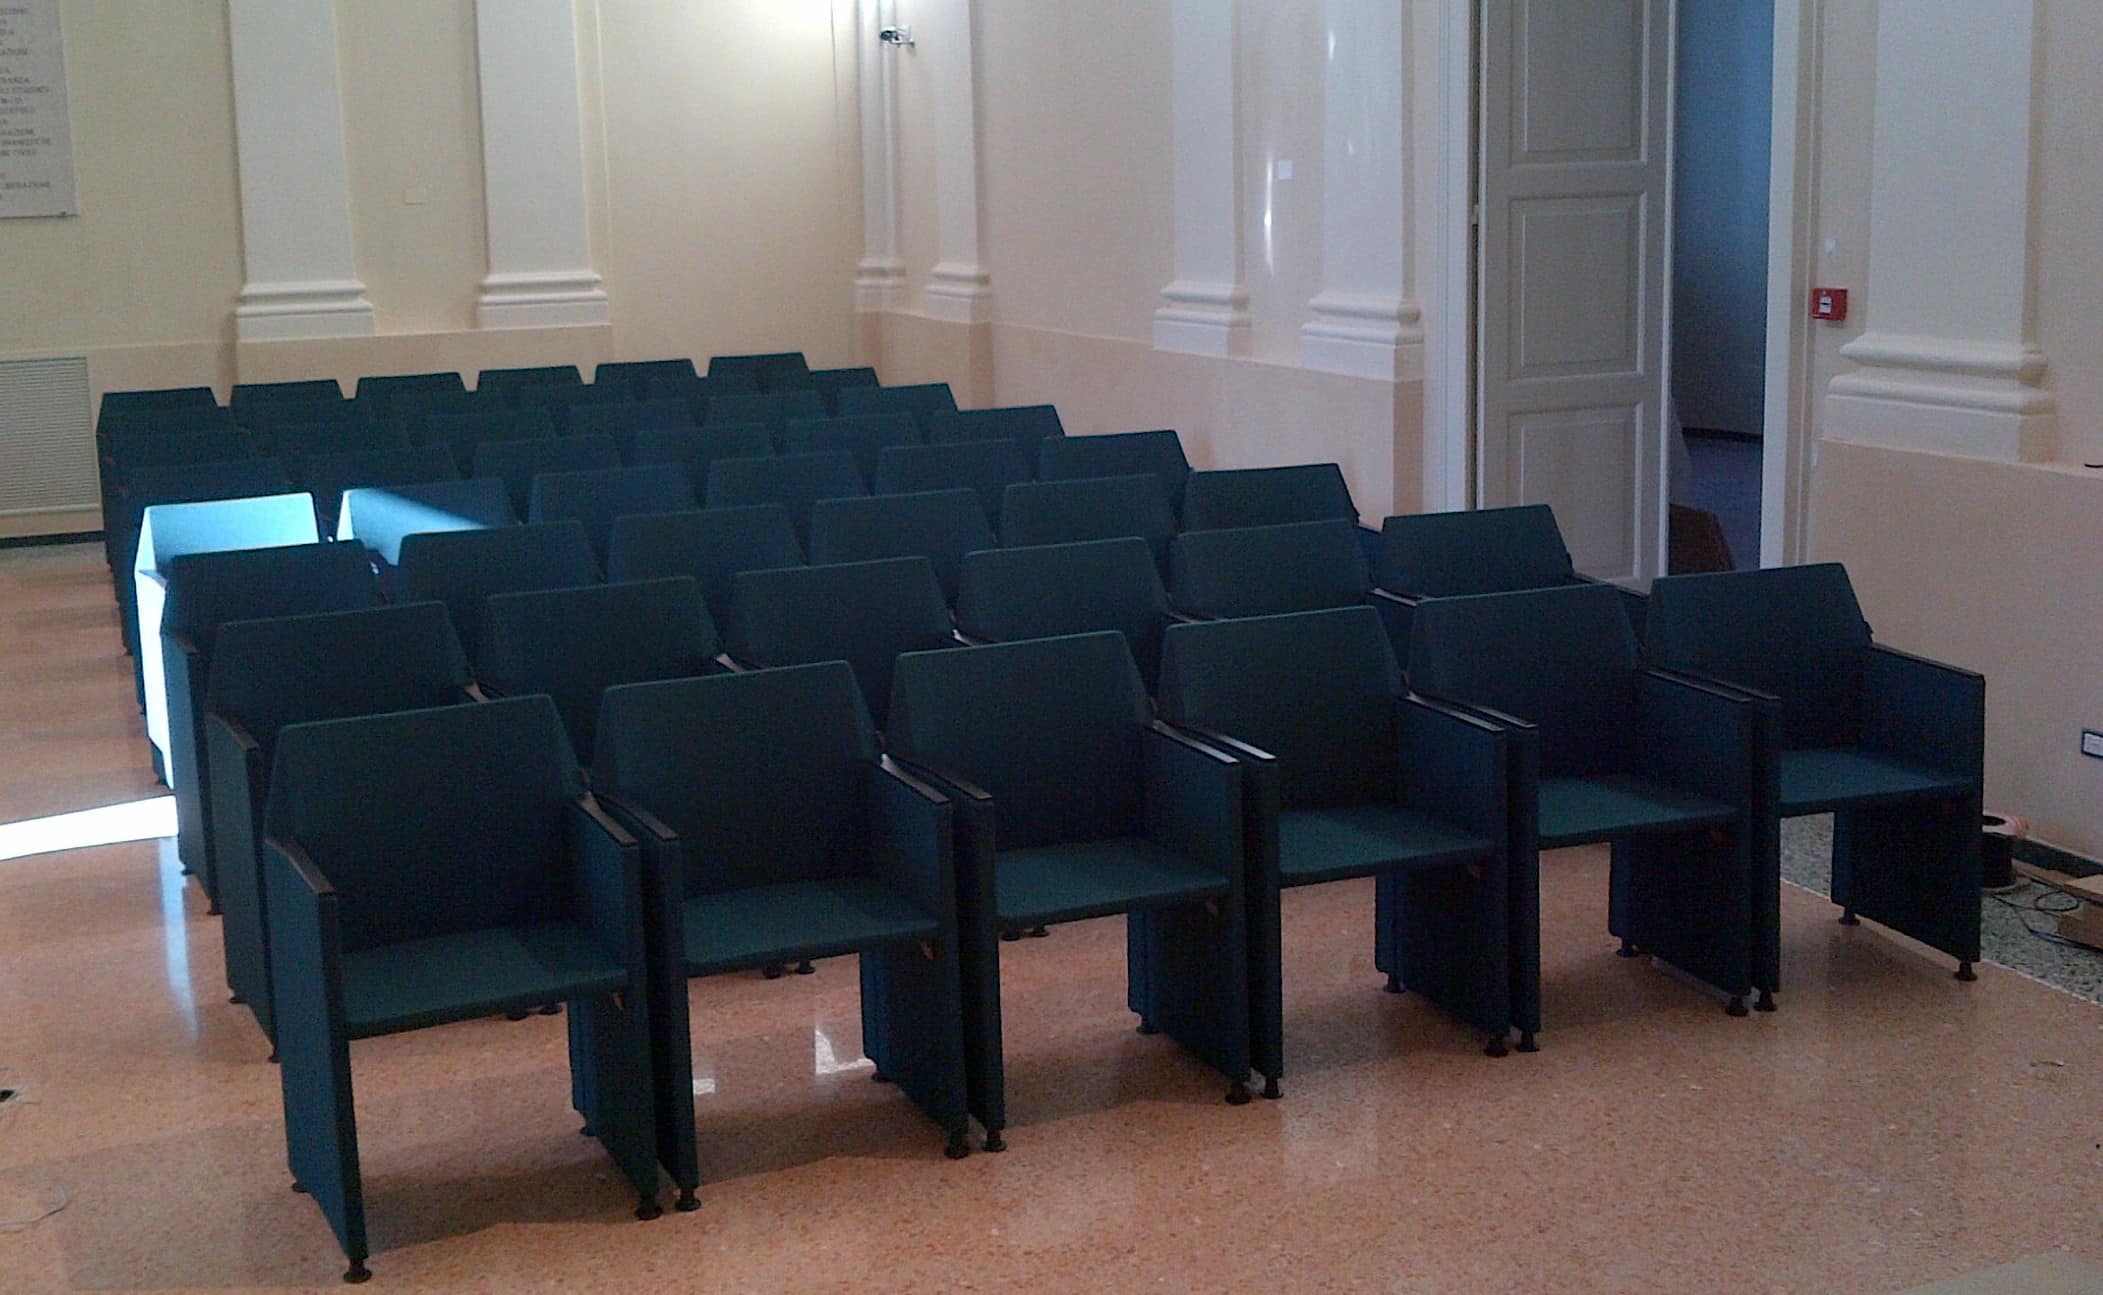 La sala conferenze del Comune di Cesena